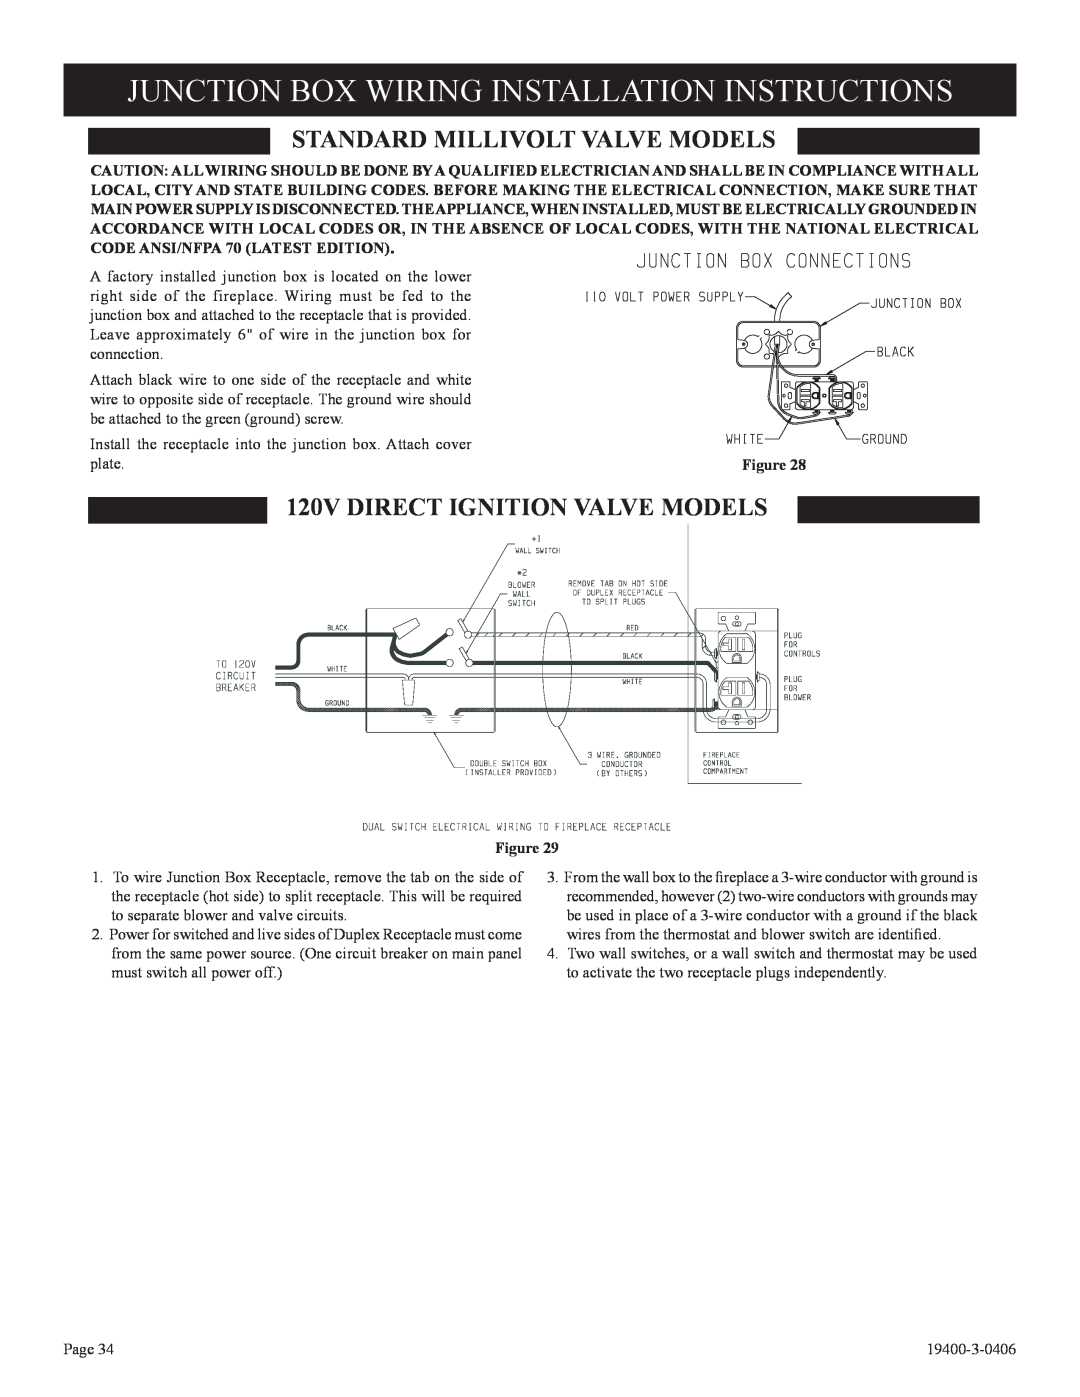 Empire Comfort Systems BVP42FP52, L)N-1 Junction Box Wiring Installation Instructions, Standard Millivolt Valve Models 